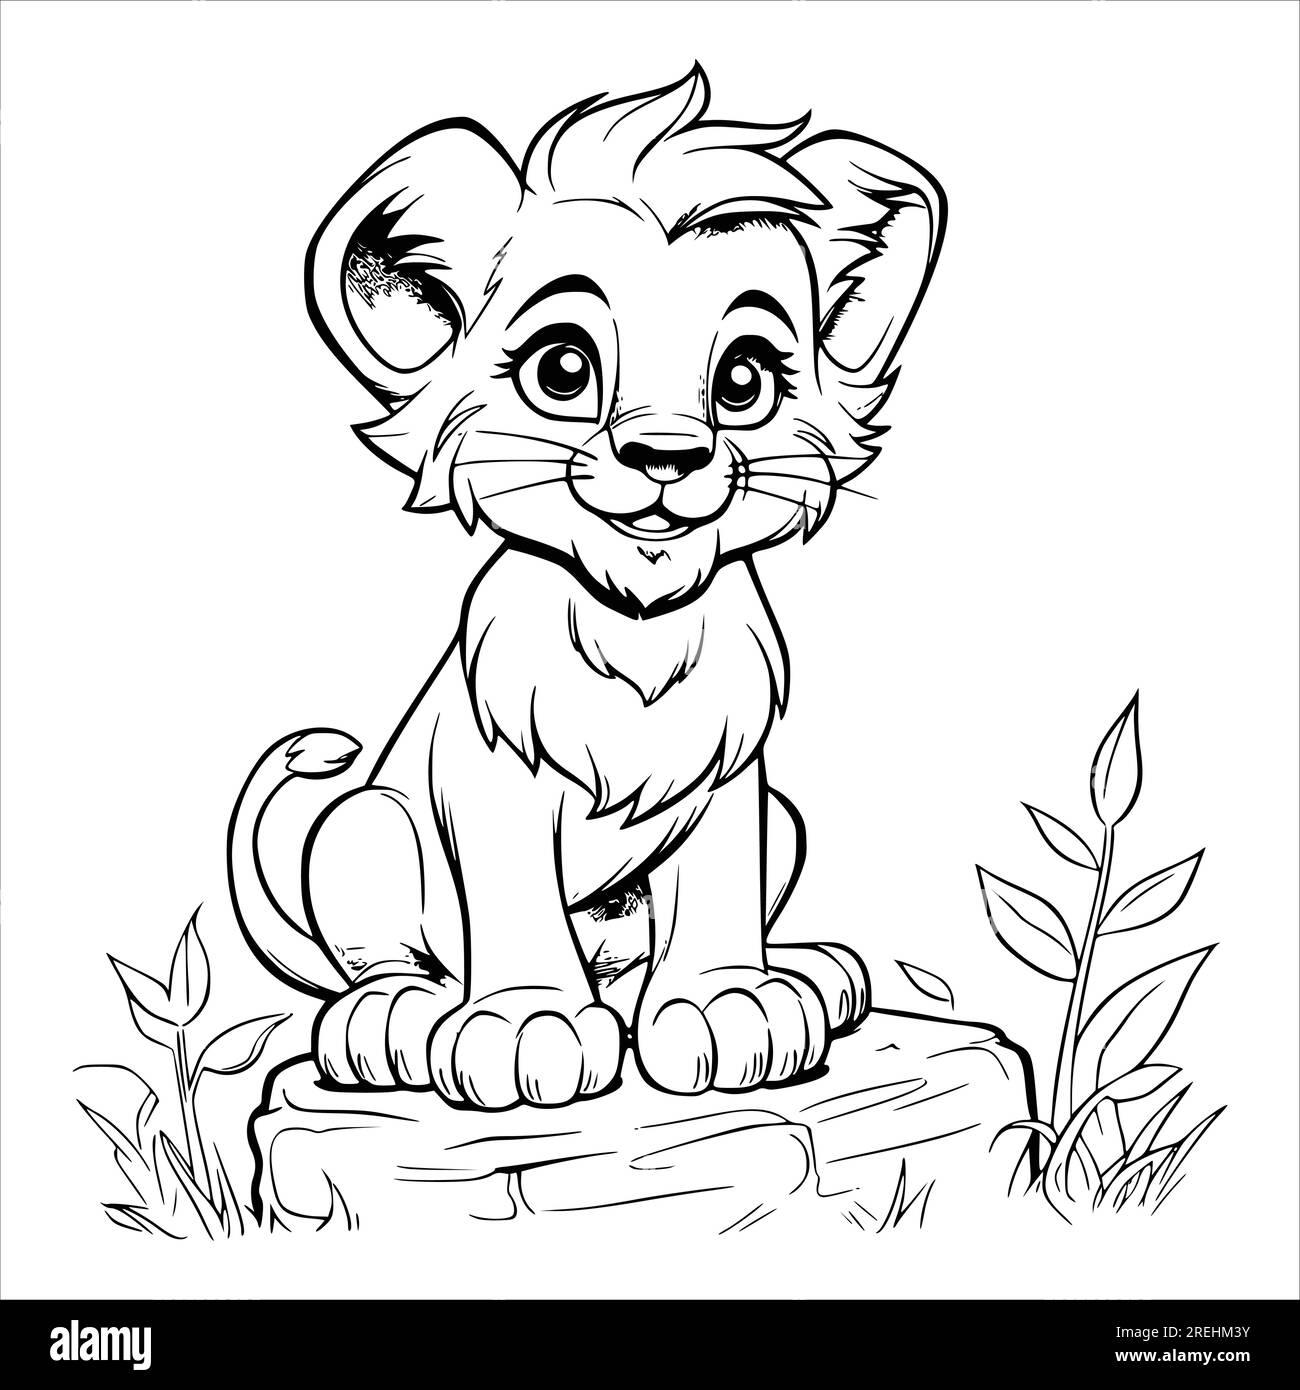 Disegno di pagine da colorare cuccioli di leone per bambini Immagine e  Vettoriale - Alamy